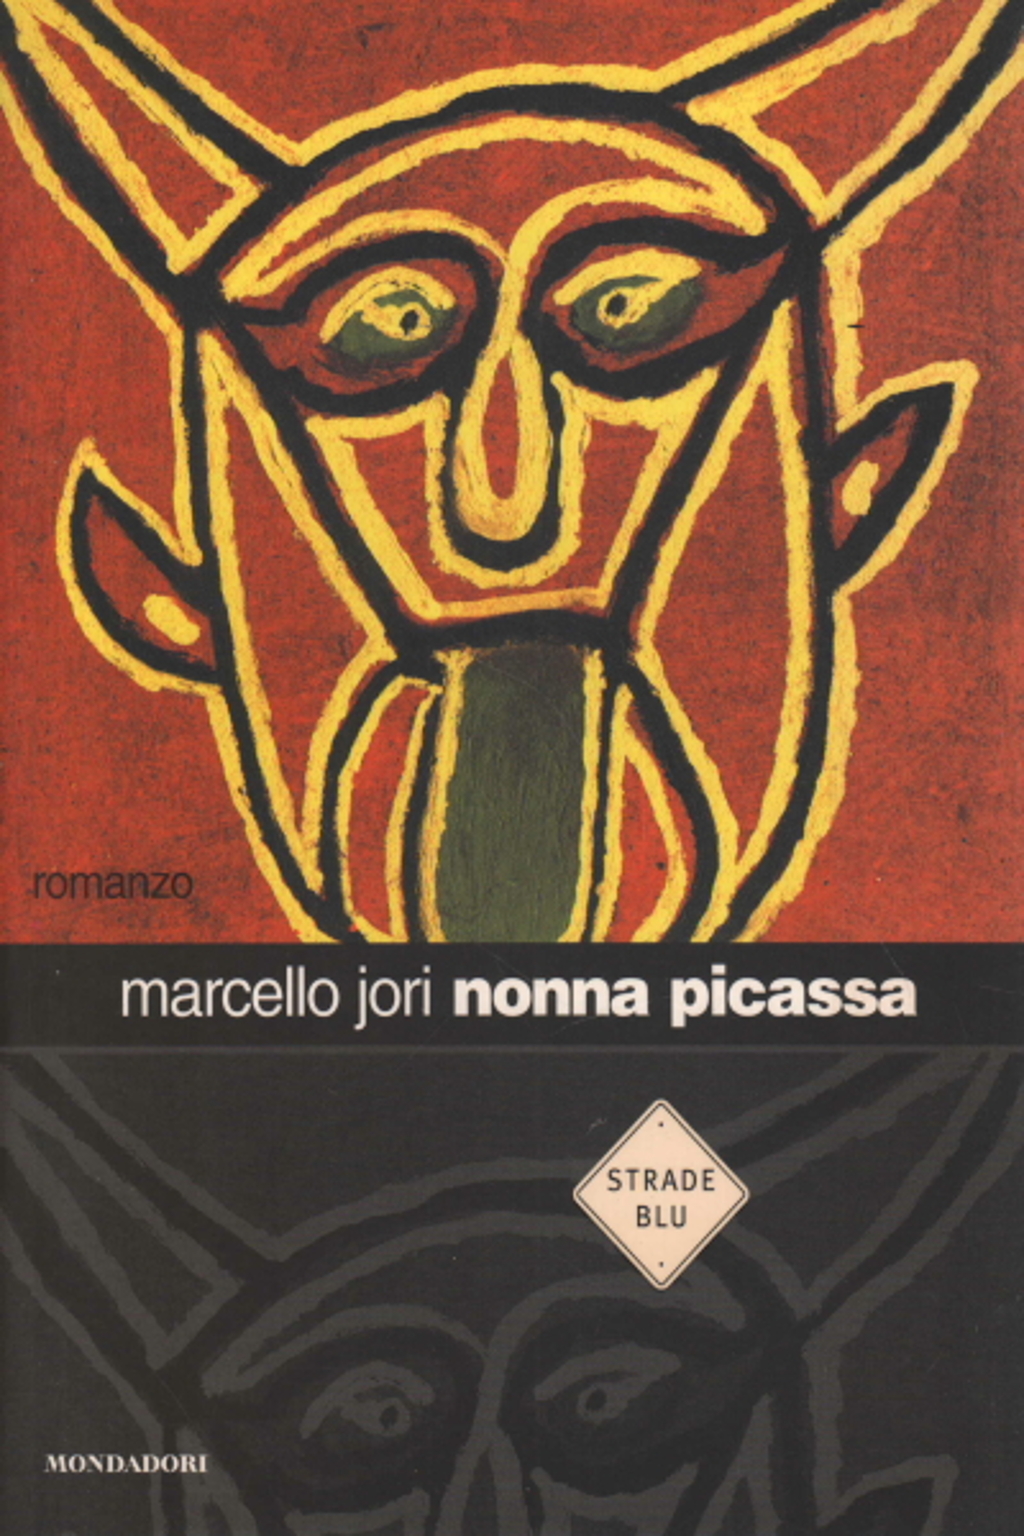 Grand-mère Picassa, Marcello Jori